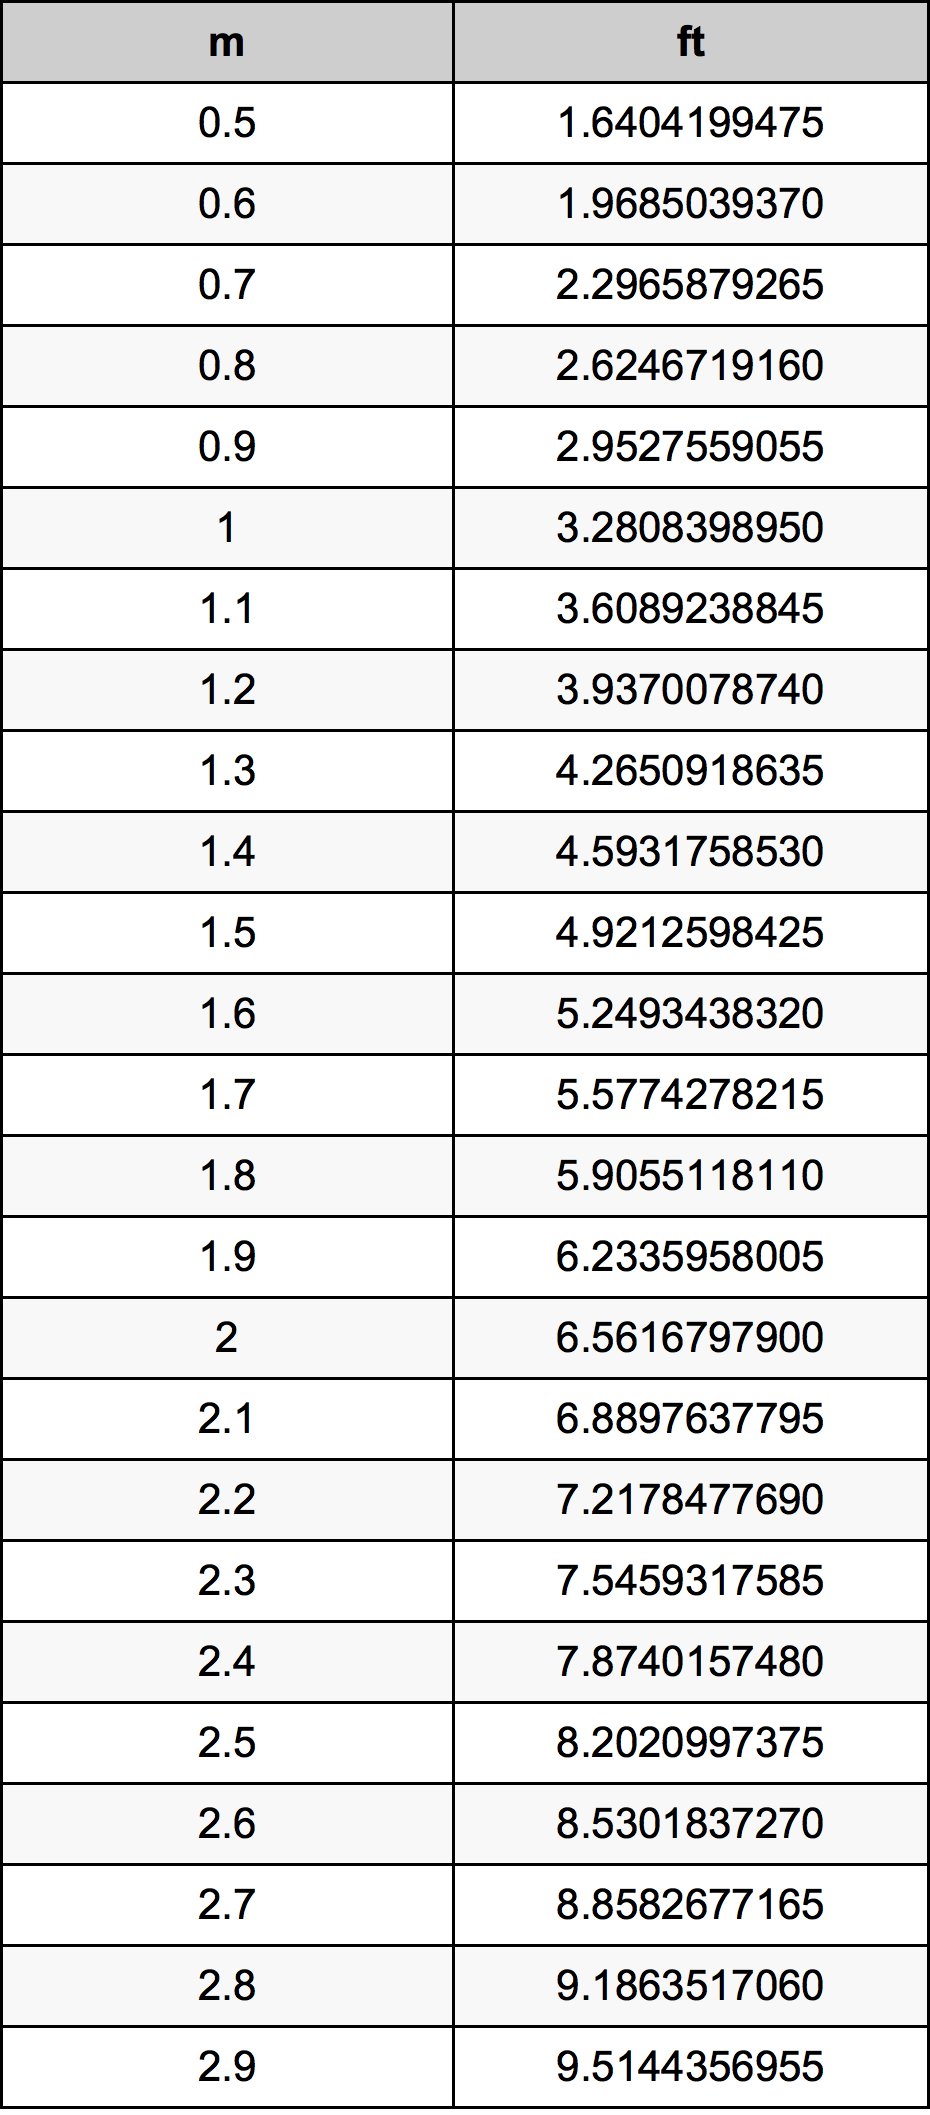 1.7 Metru tabelul de conversie